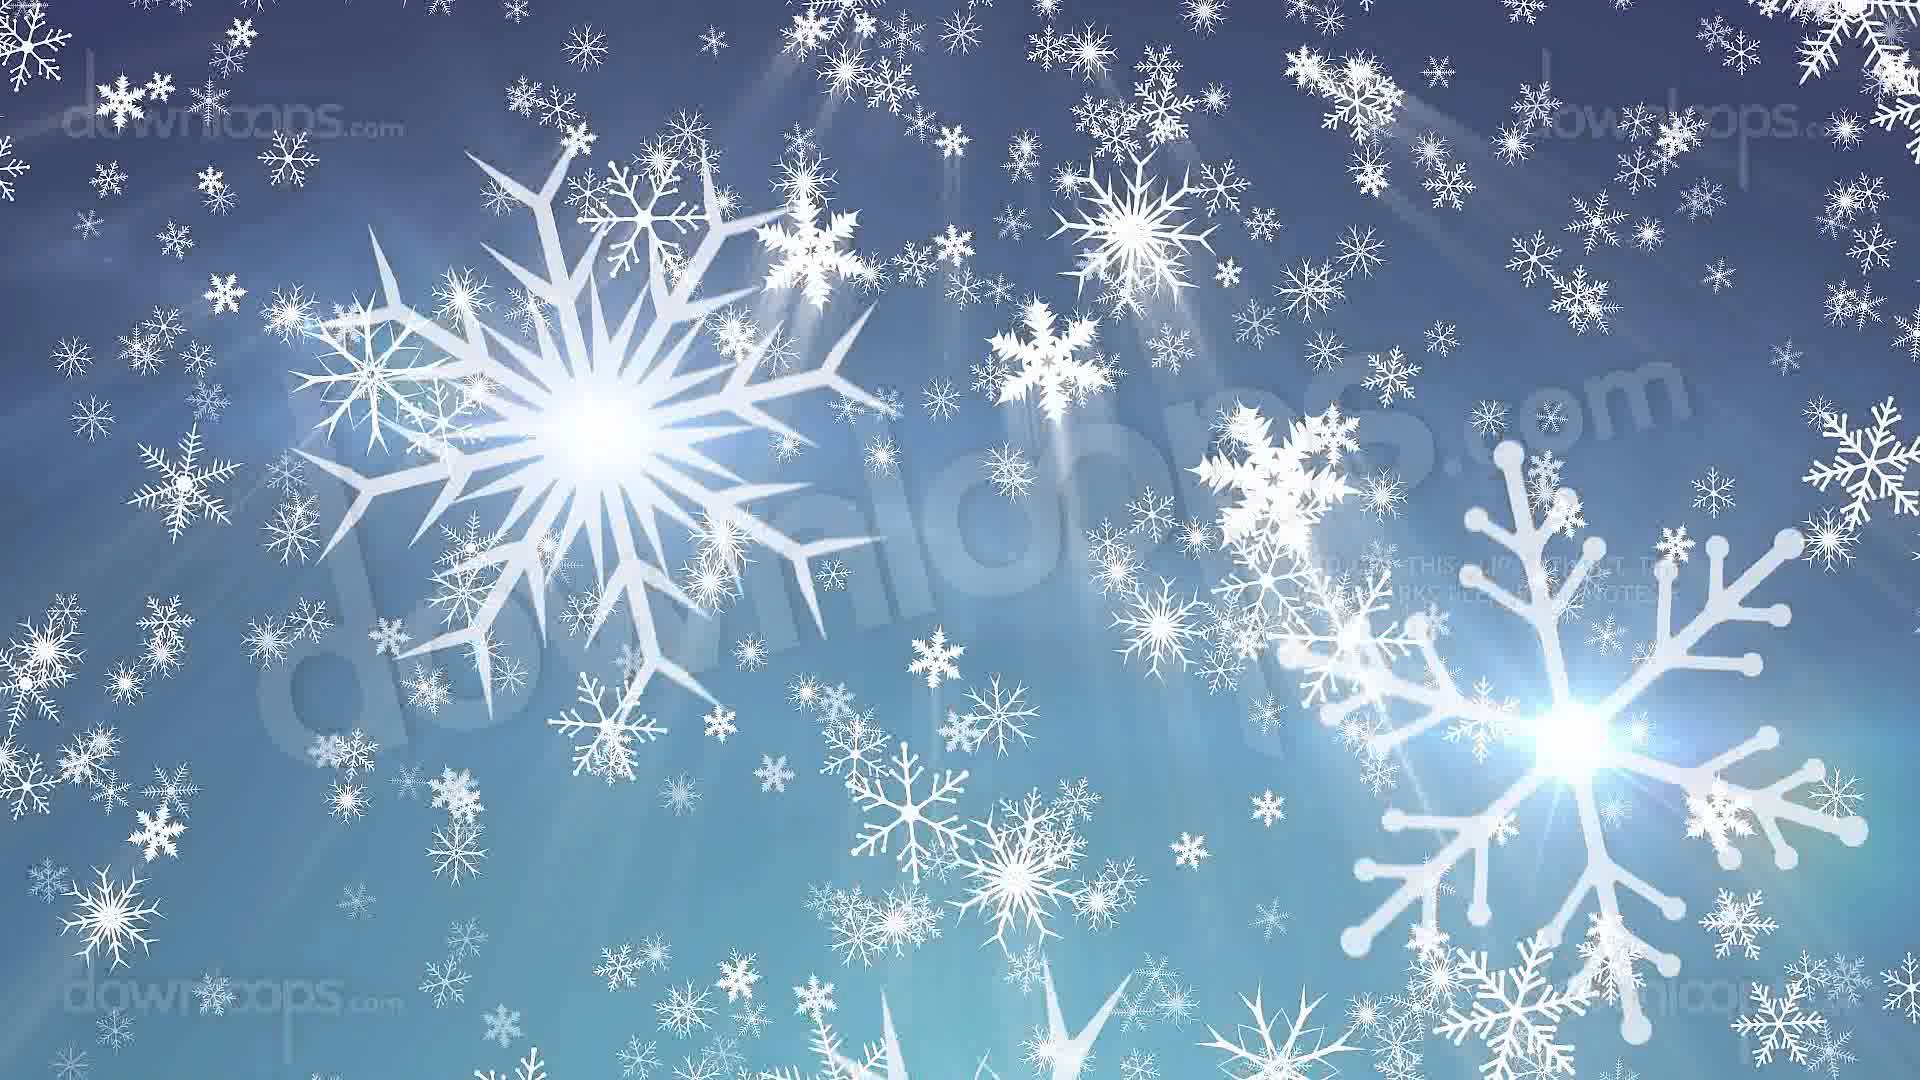 Falling Snow Animated Wallpaper - WallpaperSafari